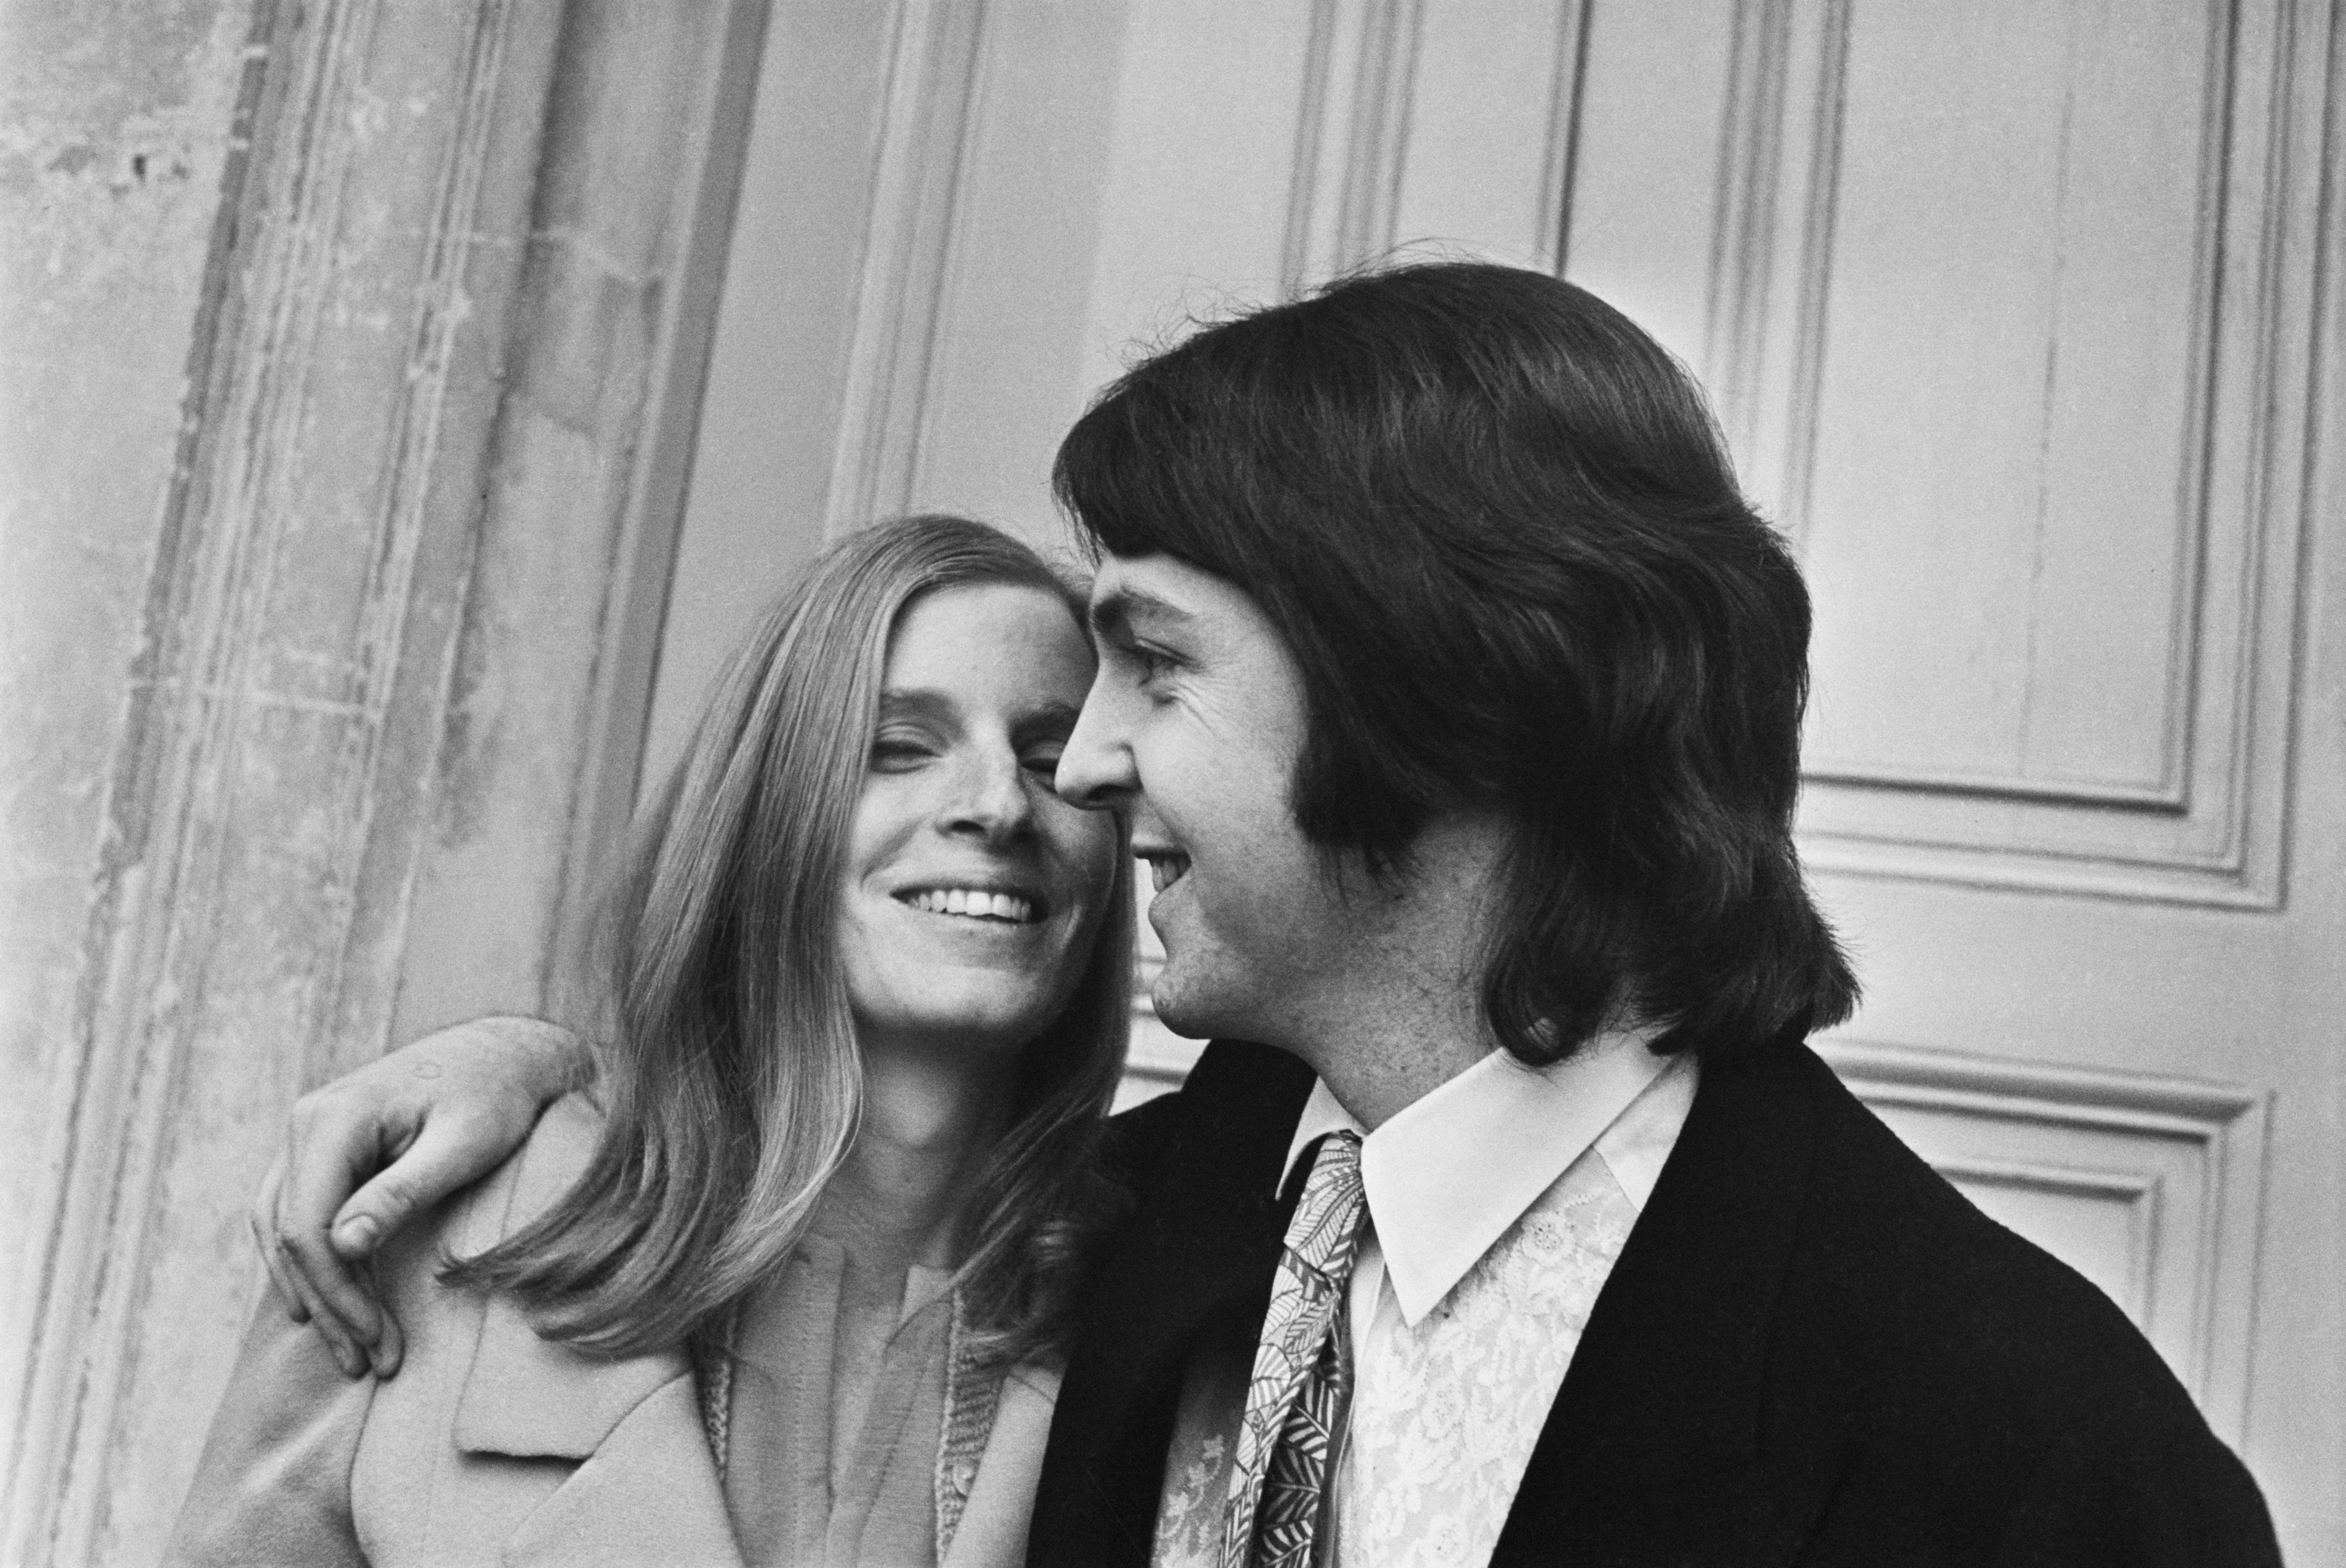 Paul McCartney épouse Linda Eastman au bureau d'enregistrement de Marylebone, à Londres, le 12 mars 1969. | Source : Getty Images